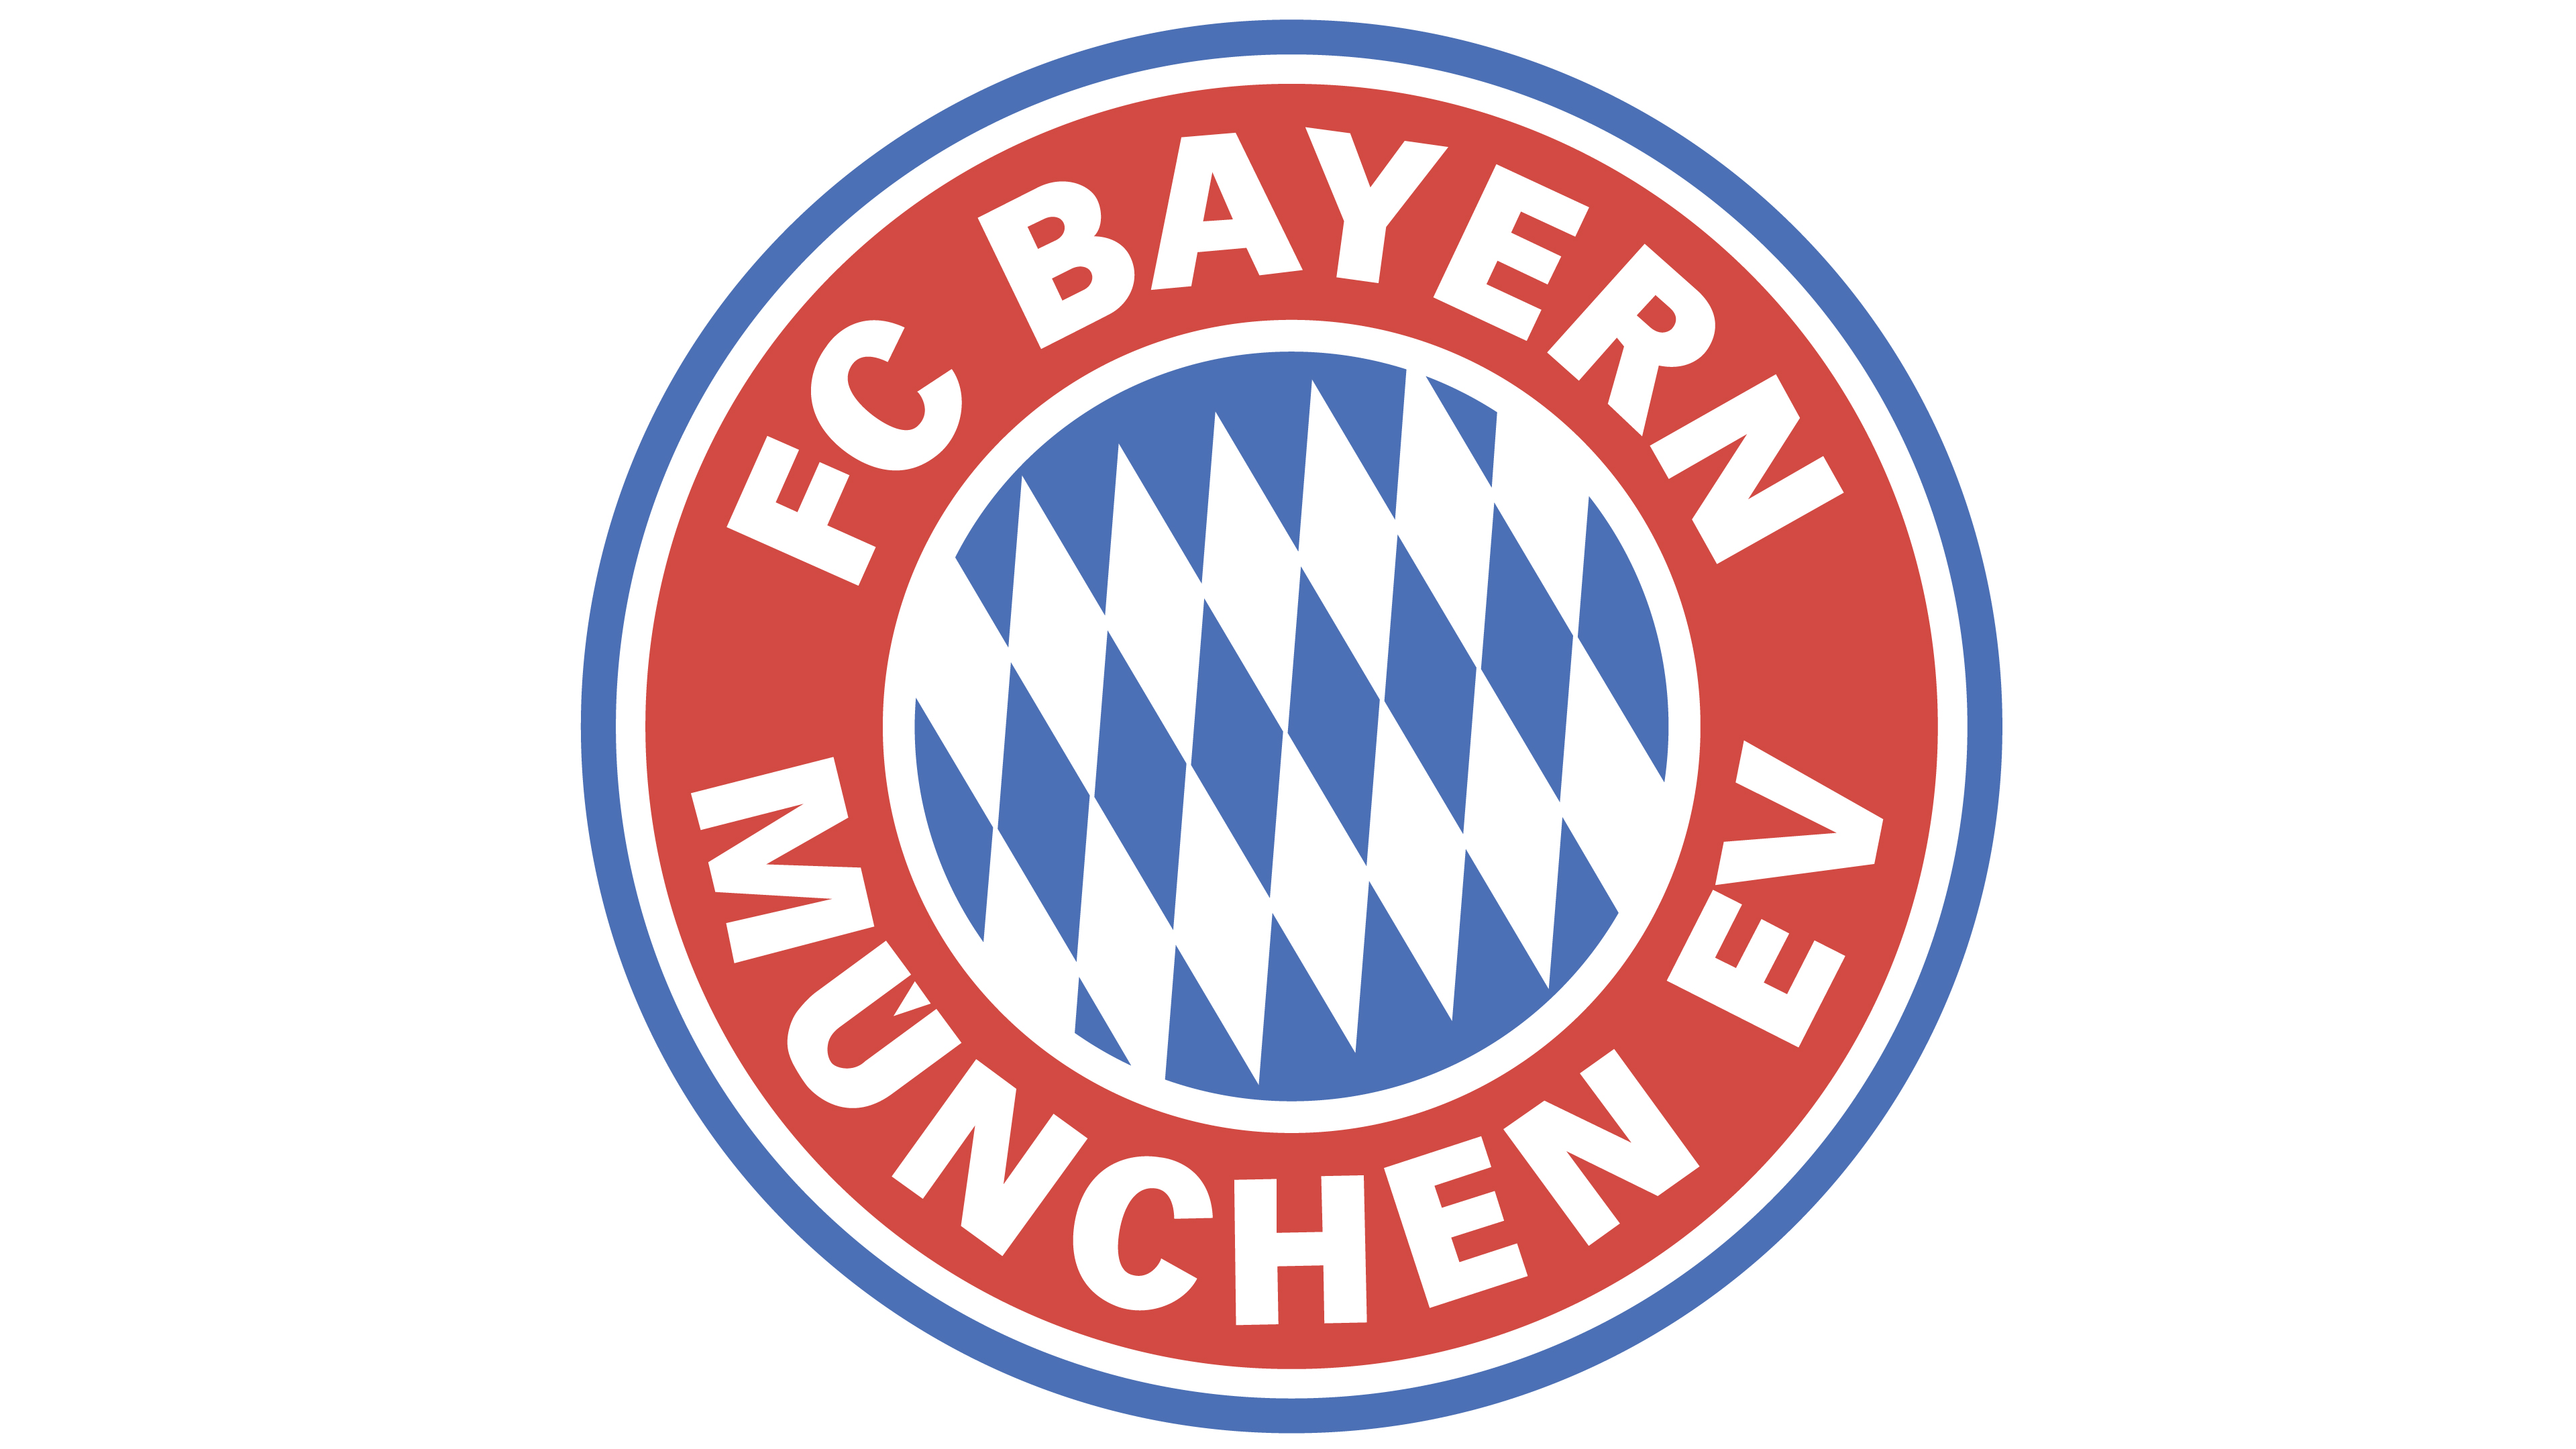 保証付き Bayern München ワッペン1979-1996年 記念グッズ